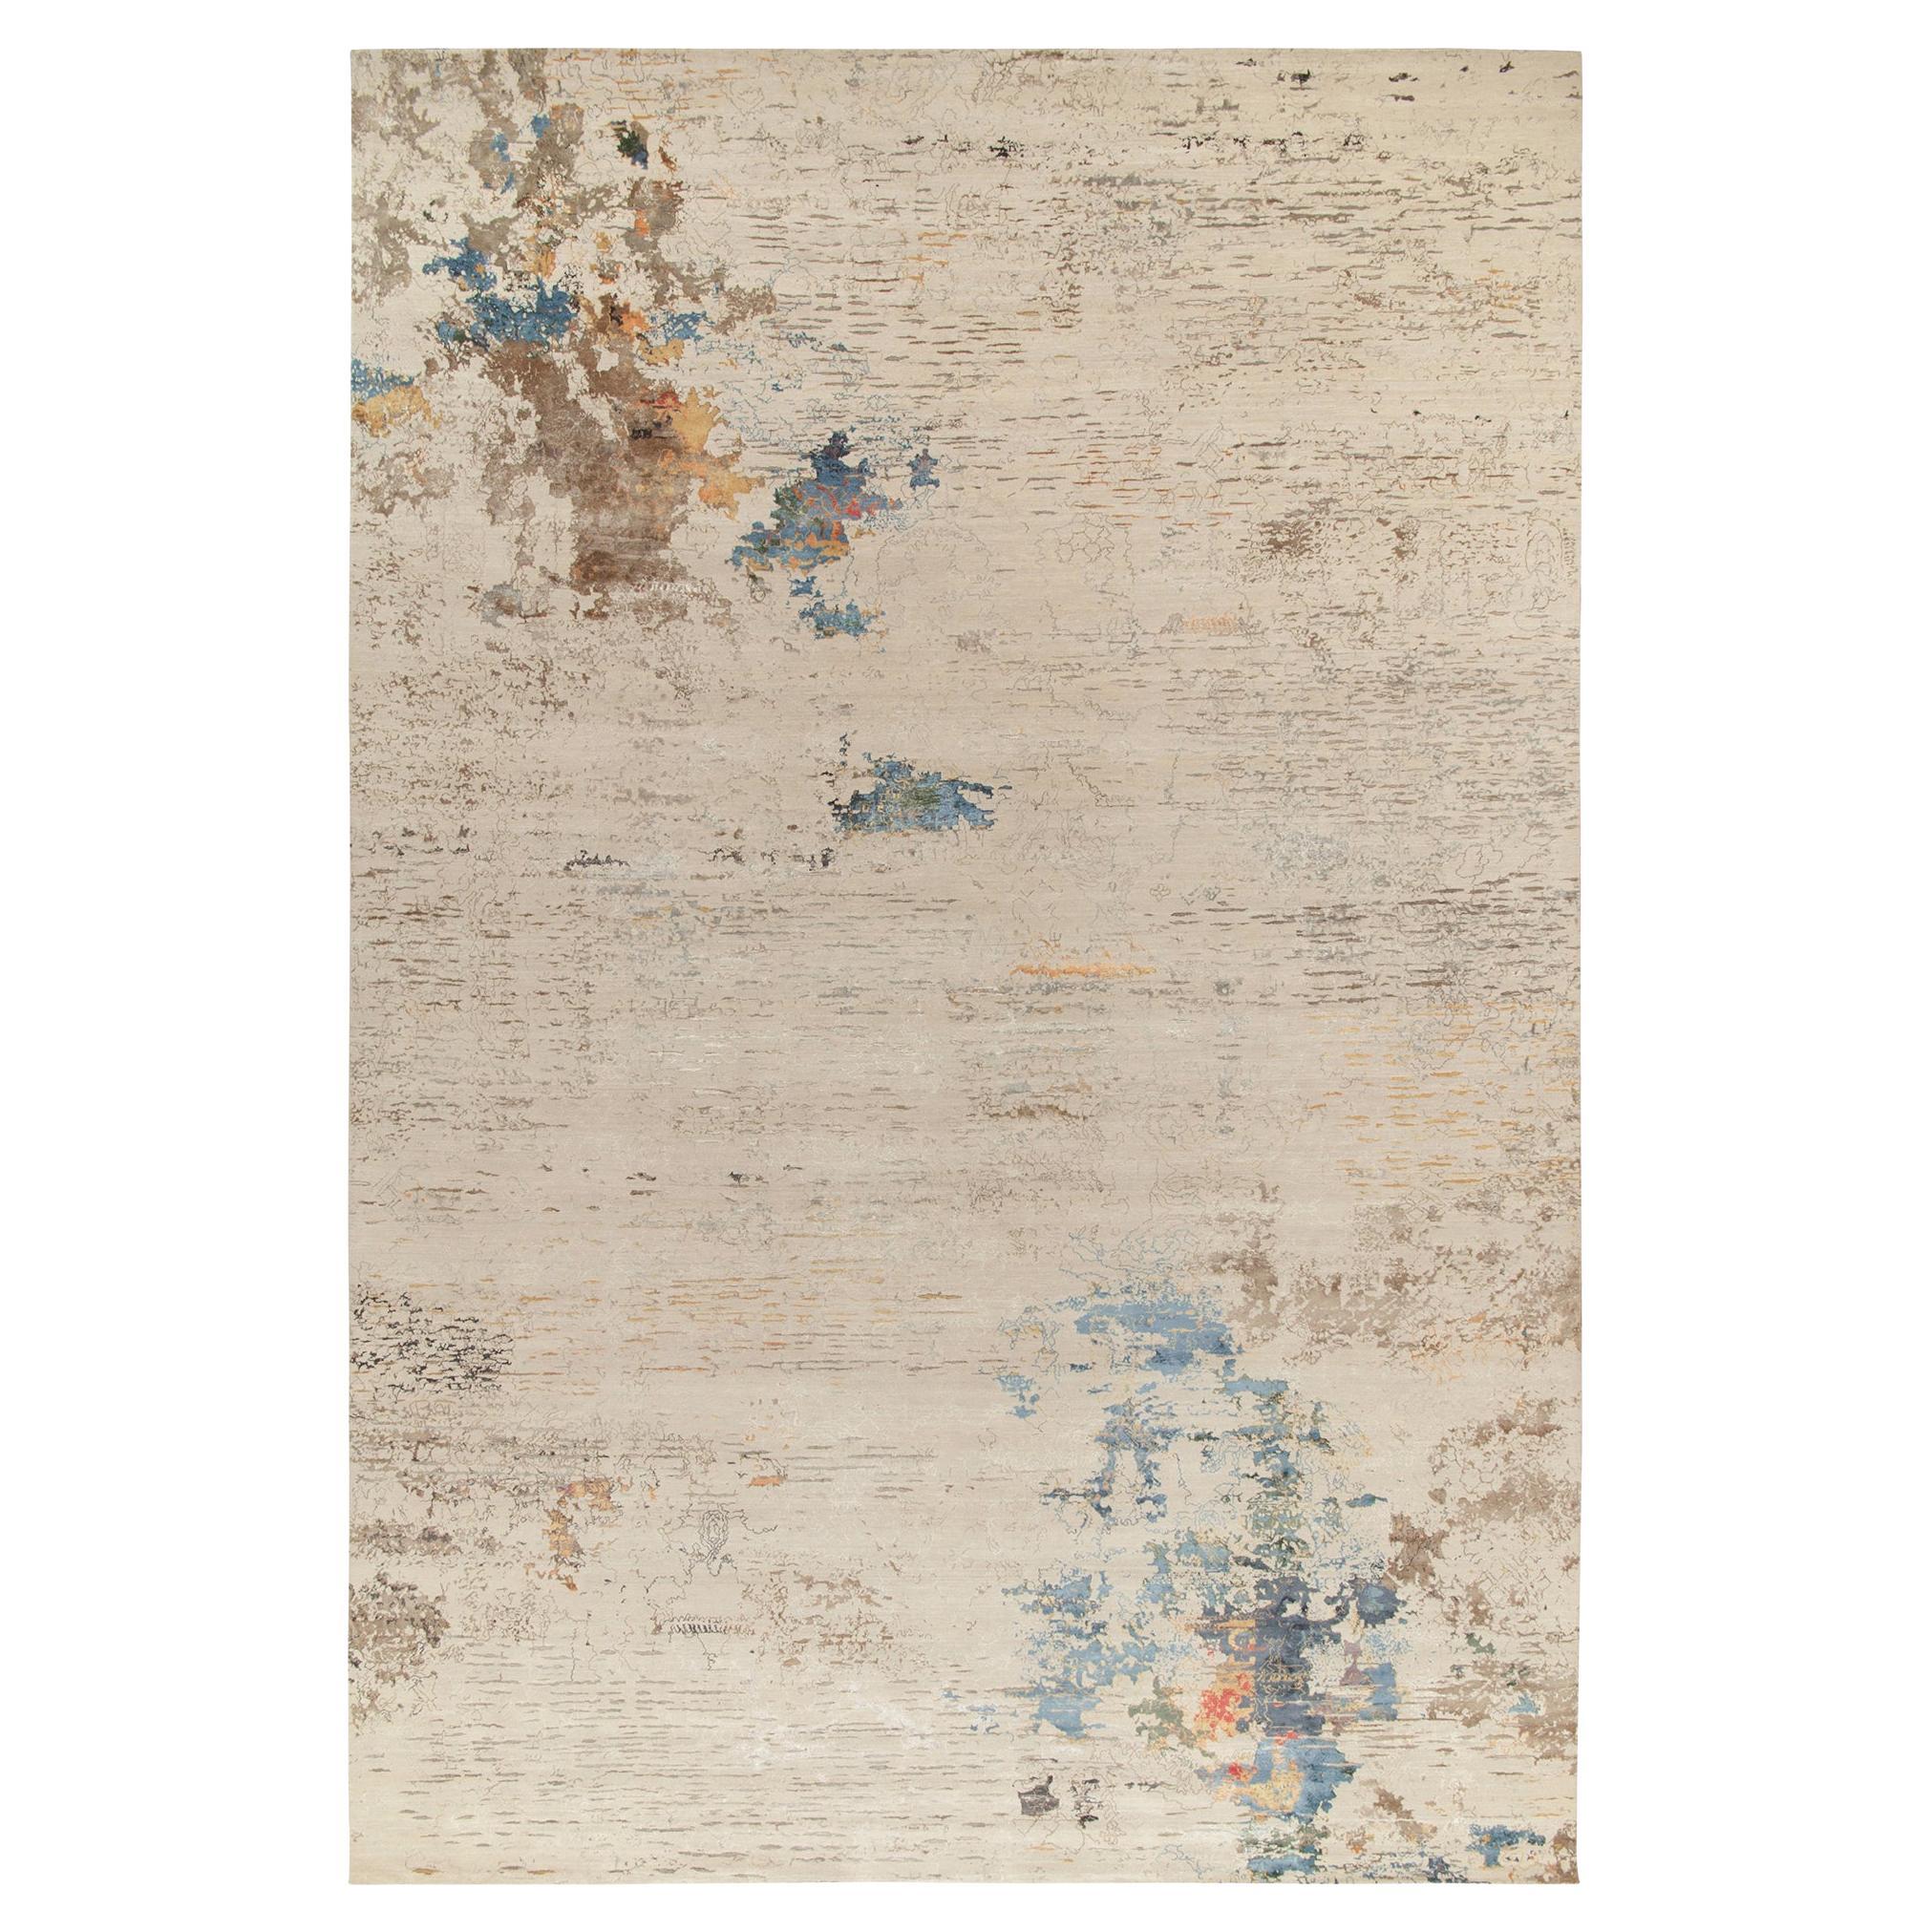 Moderner abstrakter Teppich von Teppich & Kilims in Beige-Braun und Blau mit malerischen Mustern